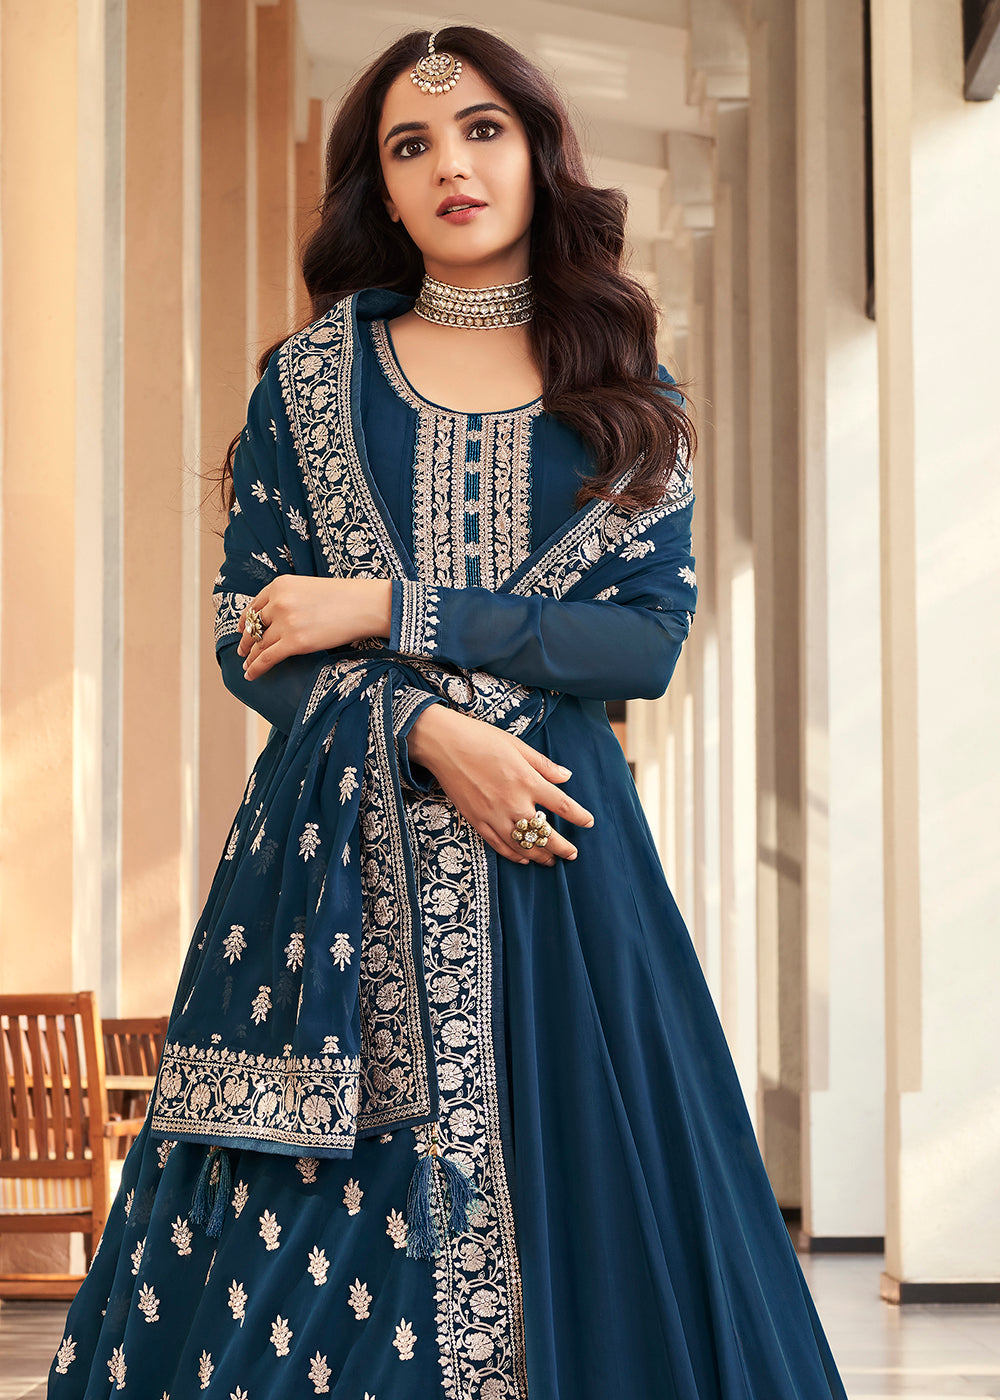 Blue Anarkali Dress Online: Latest Designs of Blue Anarkali Dresses Shopping